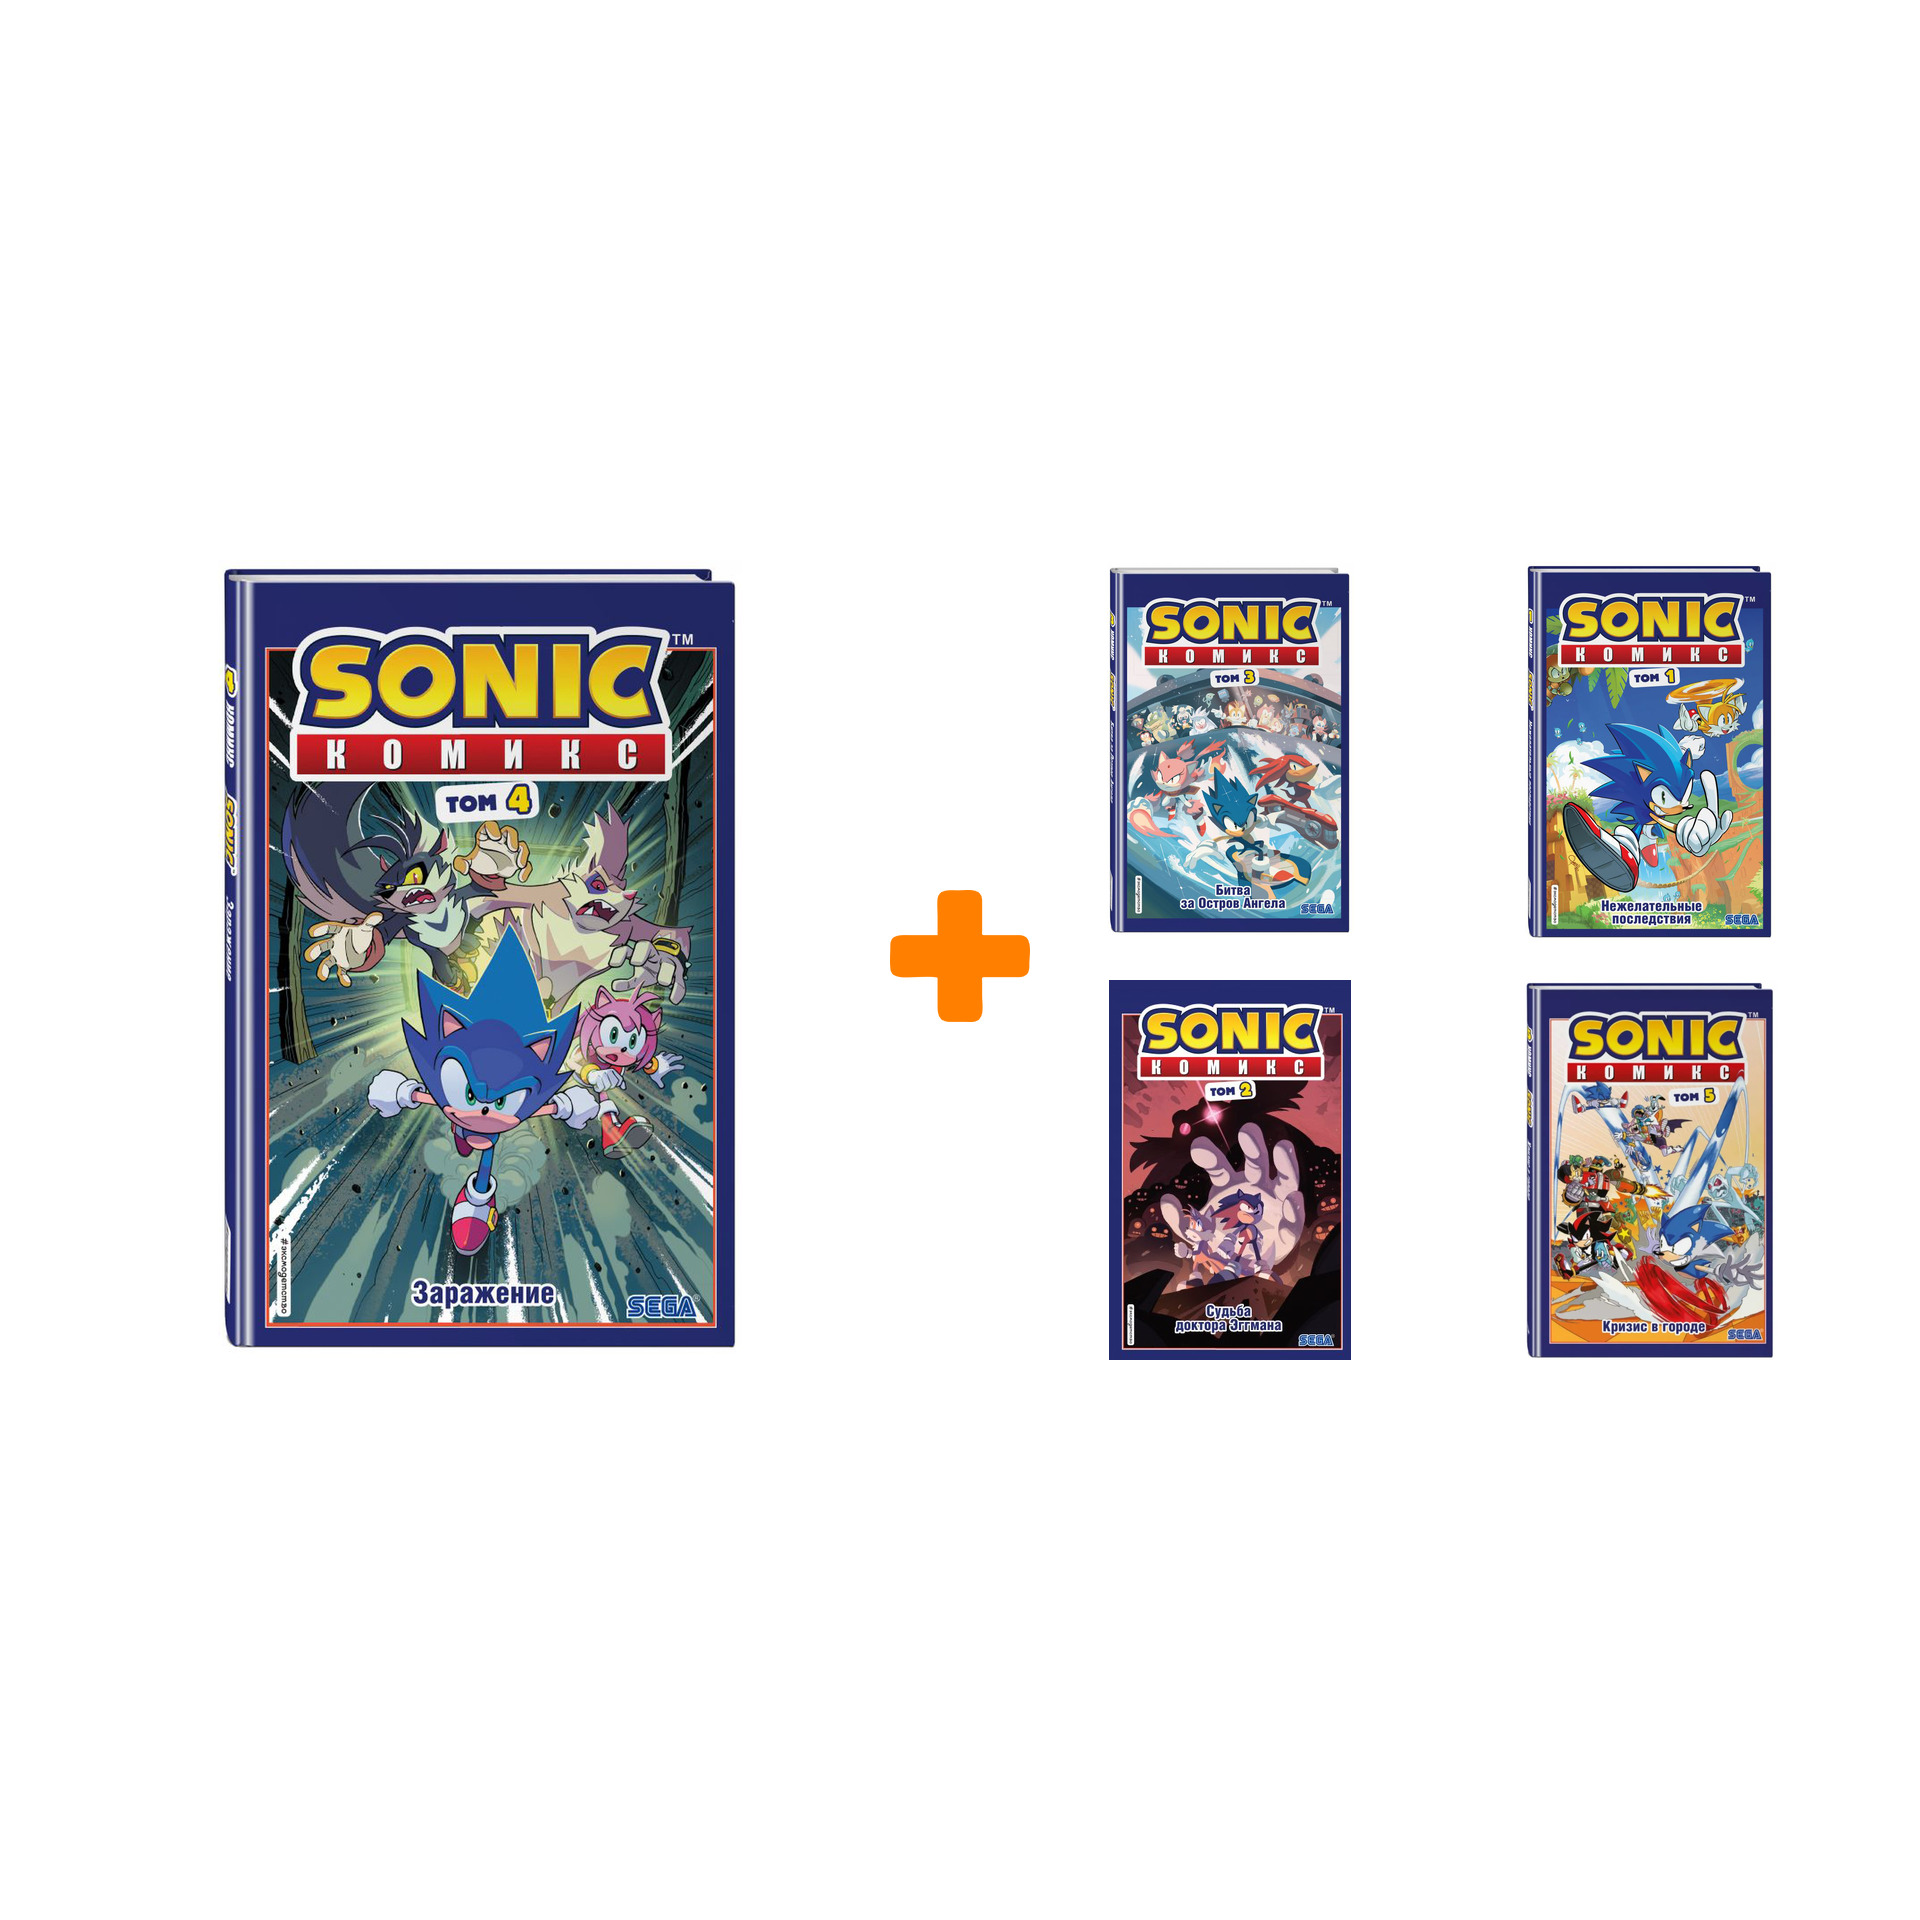 Соник том 1. Соник комикс том 4. Sonic. Заражение. Том 4. Sonic. Битва за остров ангела том 3. Соник комикс том 2.